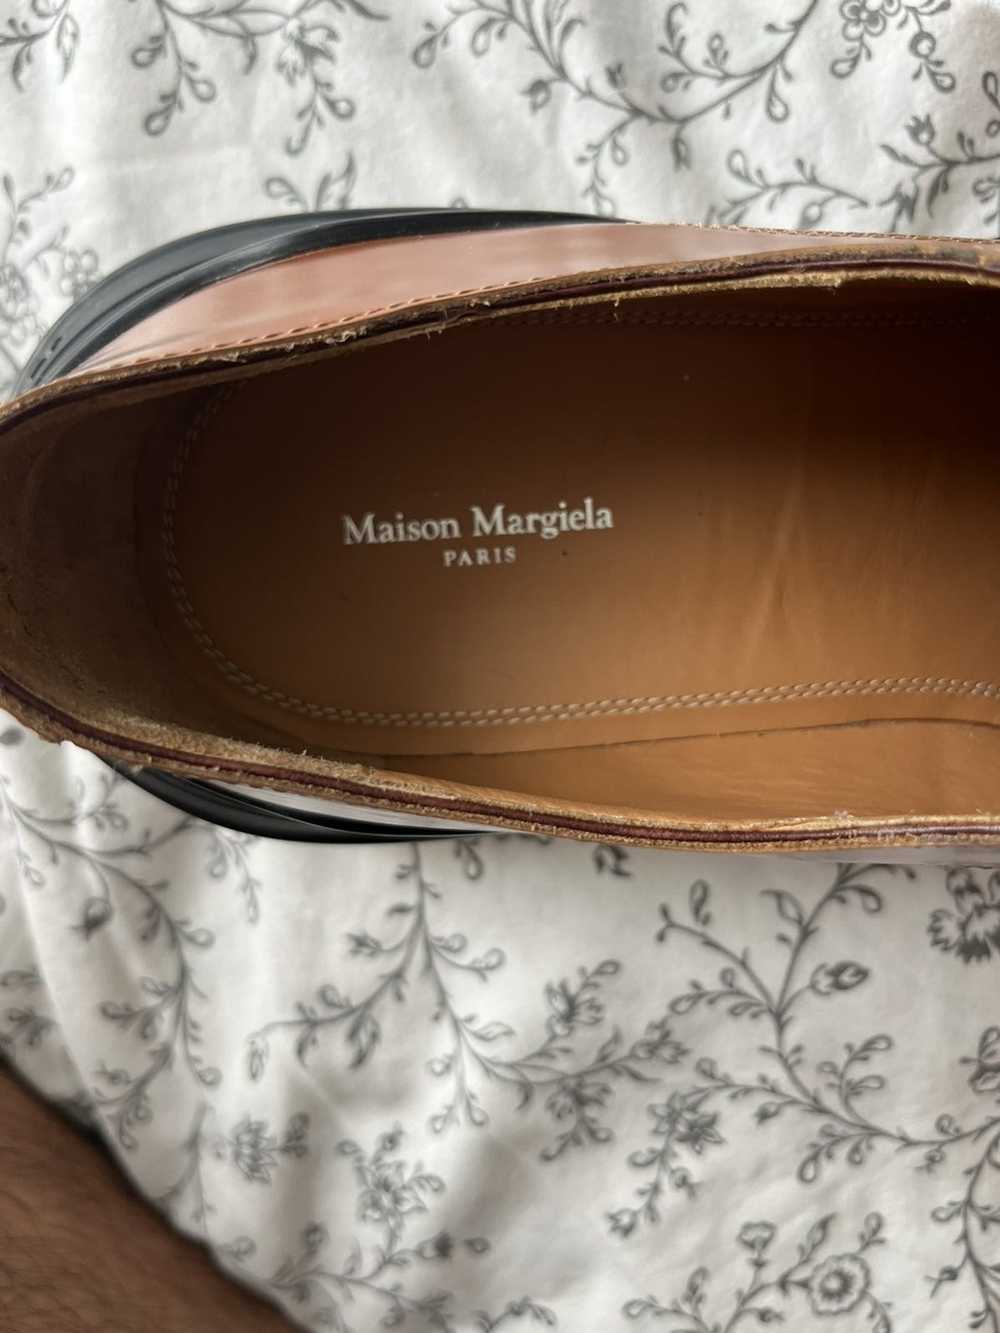 Maison Margiela Maison Margiela dress shoes - image 9